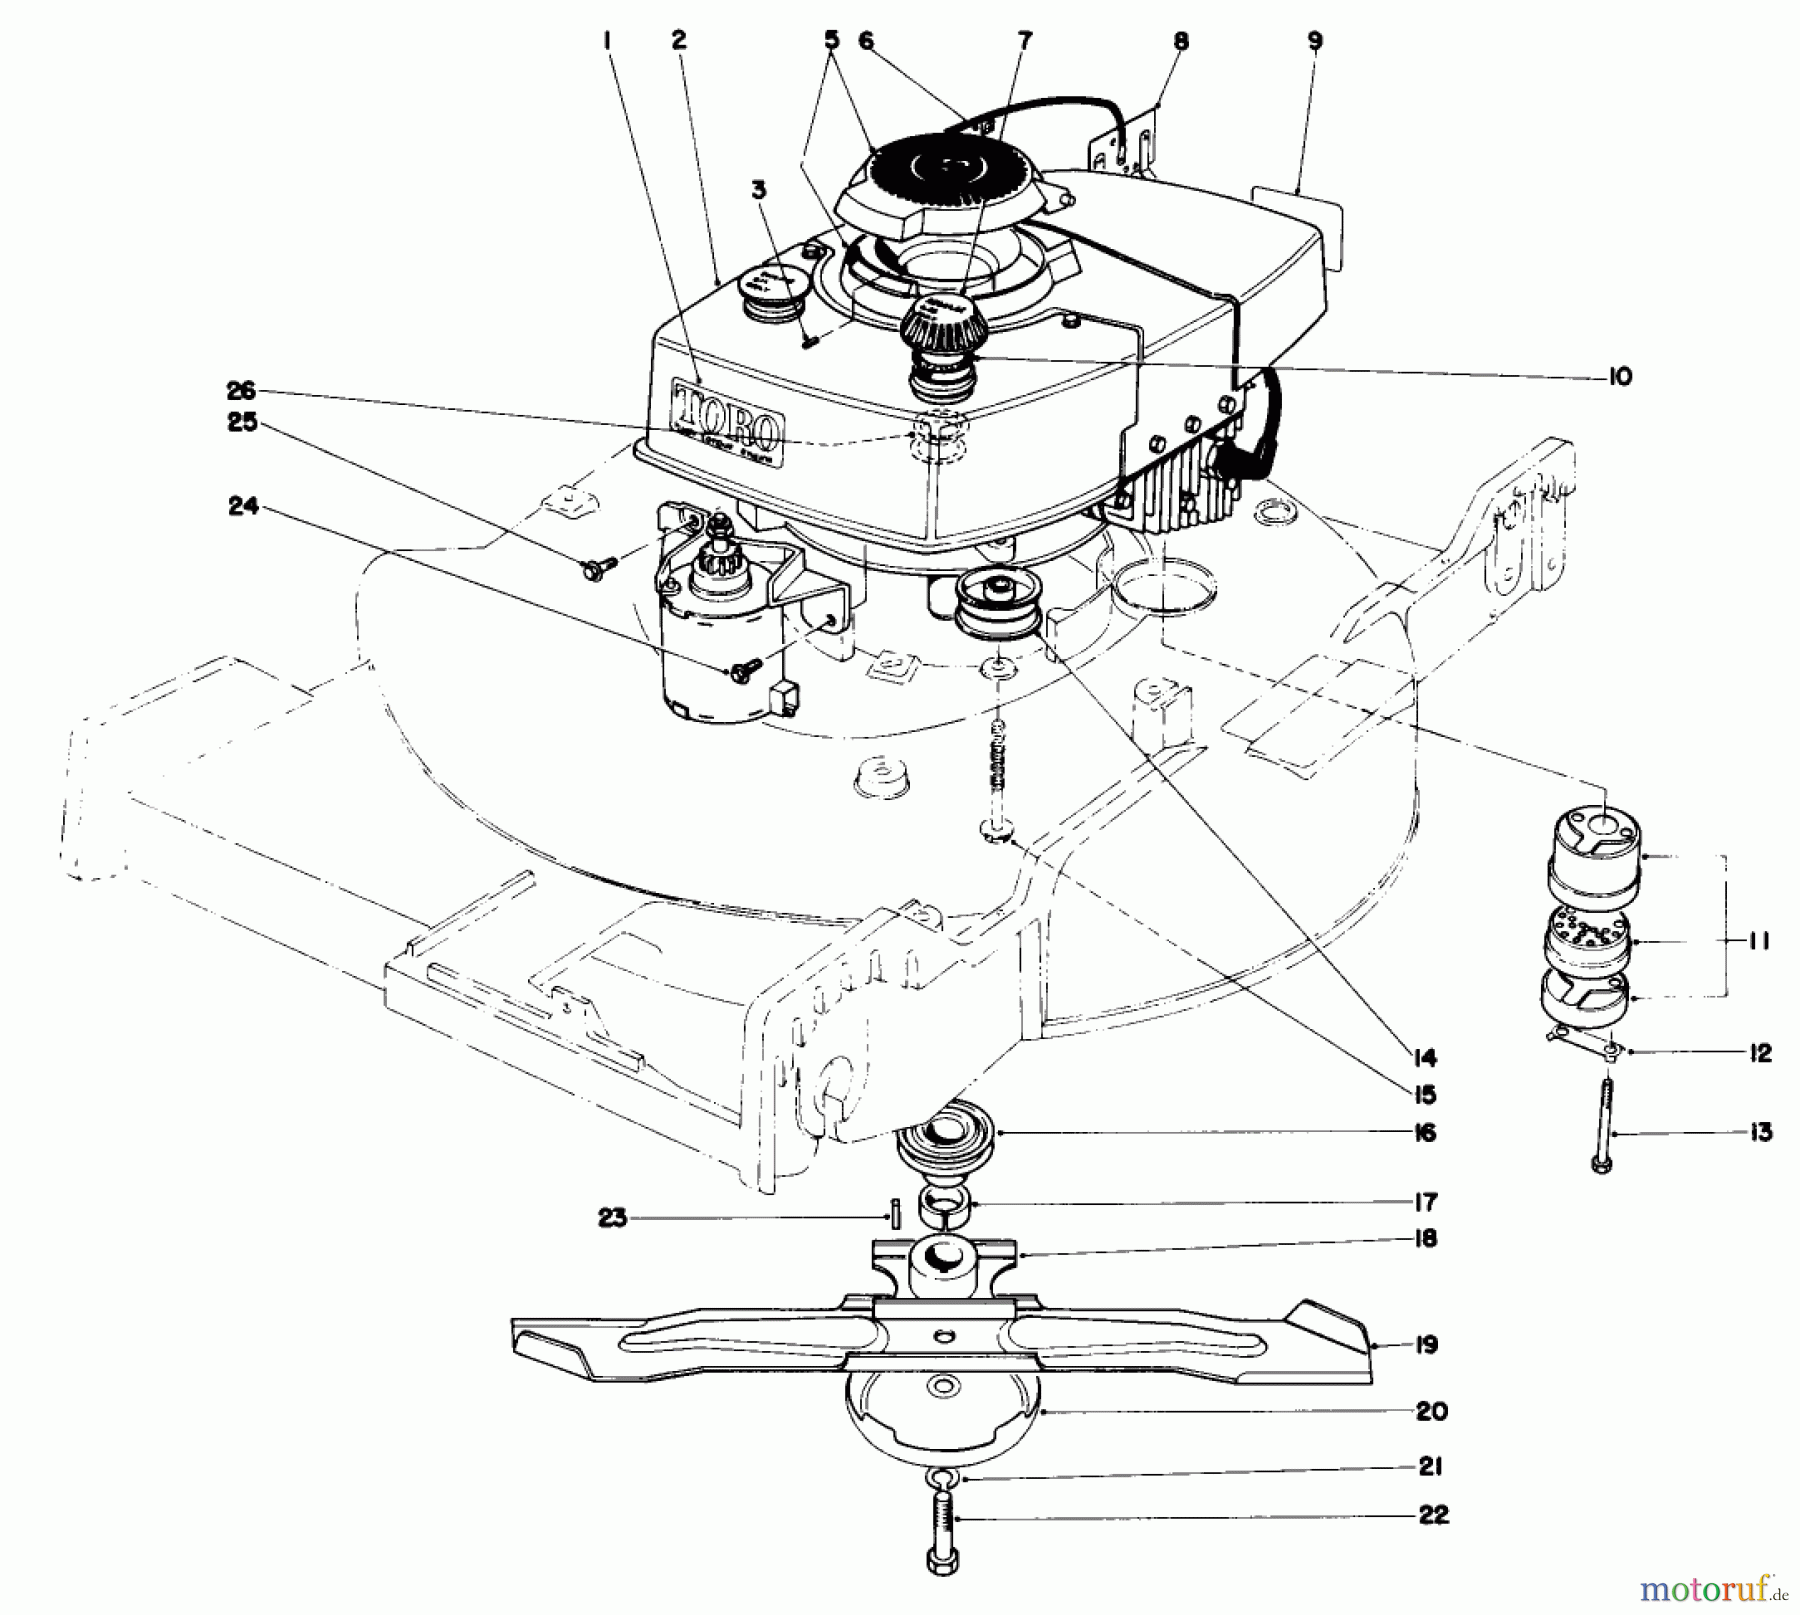  Toro Neu Mowers, Walk-Behind Seite 1 20506 - Toro Lawnmower, 1976 (6000001-6999999) ENGINE ASSEMBLY (MODEL 20696)